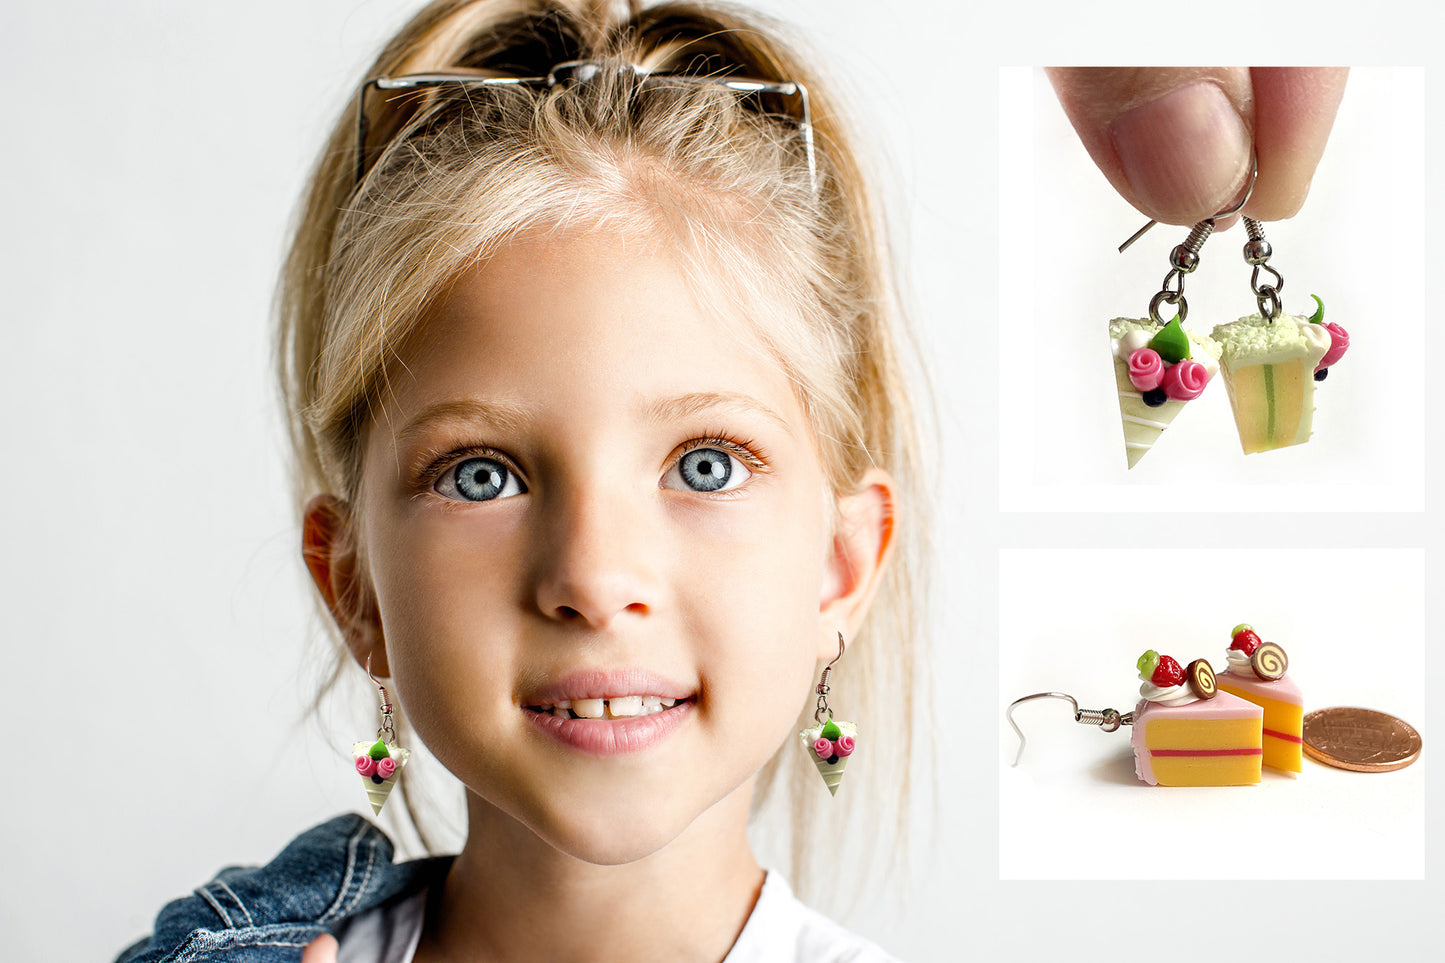 Handmade miniature food model earrings for Girls Teen - Slice Cake Heart Single Rose